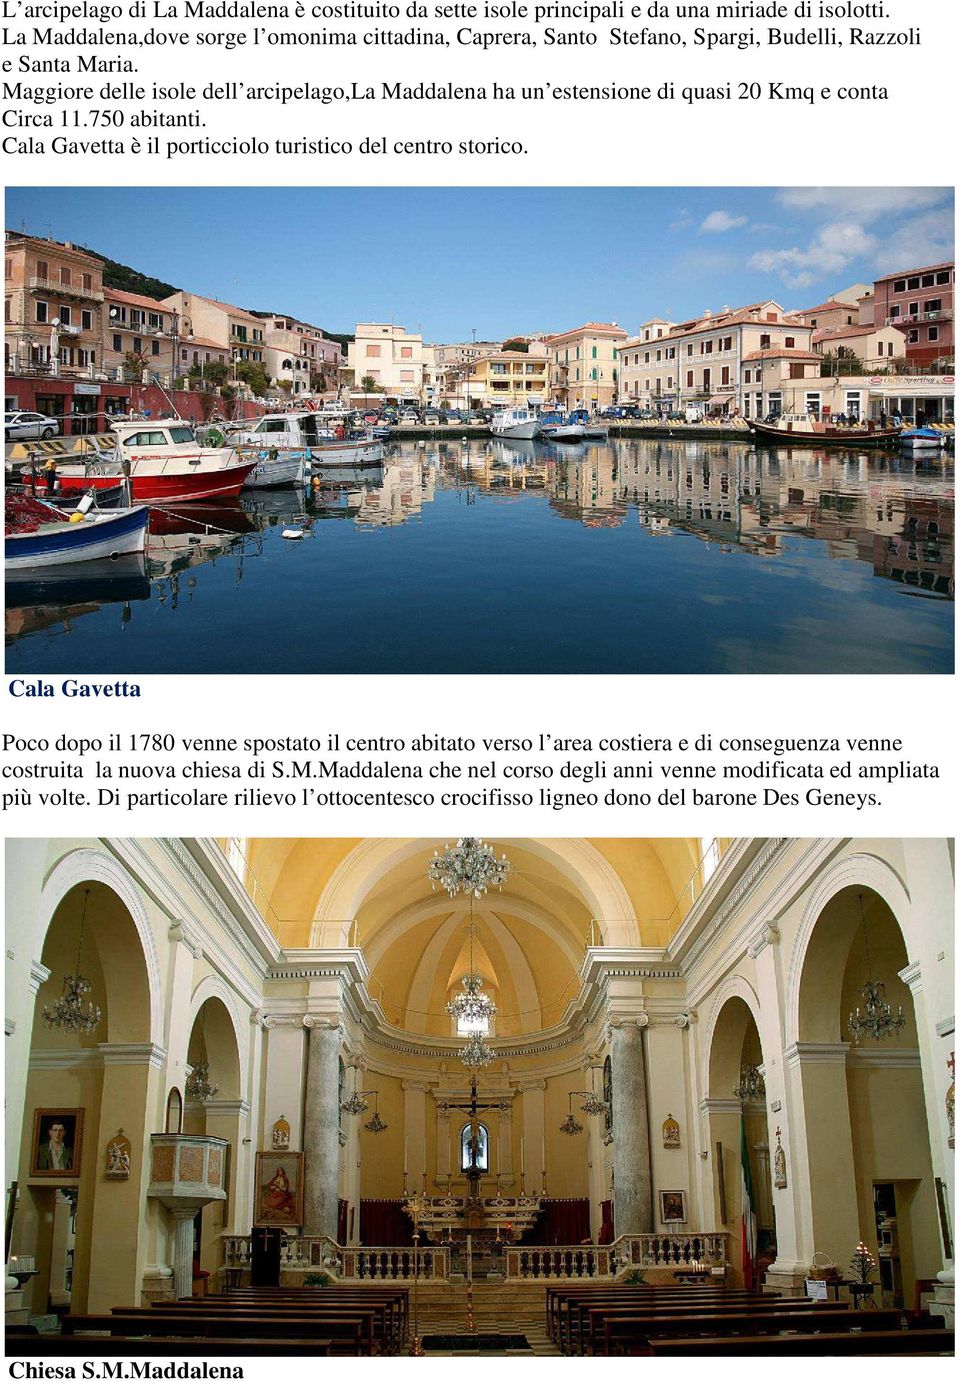 Maggiore delle isole dell arcipelago,la Maddalena ha un estensione di quasi 20 Kmq e conta Circa 11.750 abitanti. Cala Gavetta è il porticciolo turistico del centro storico.